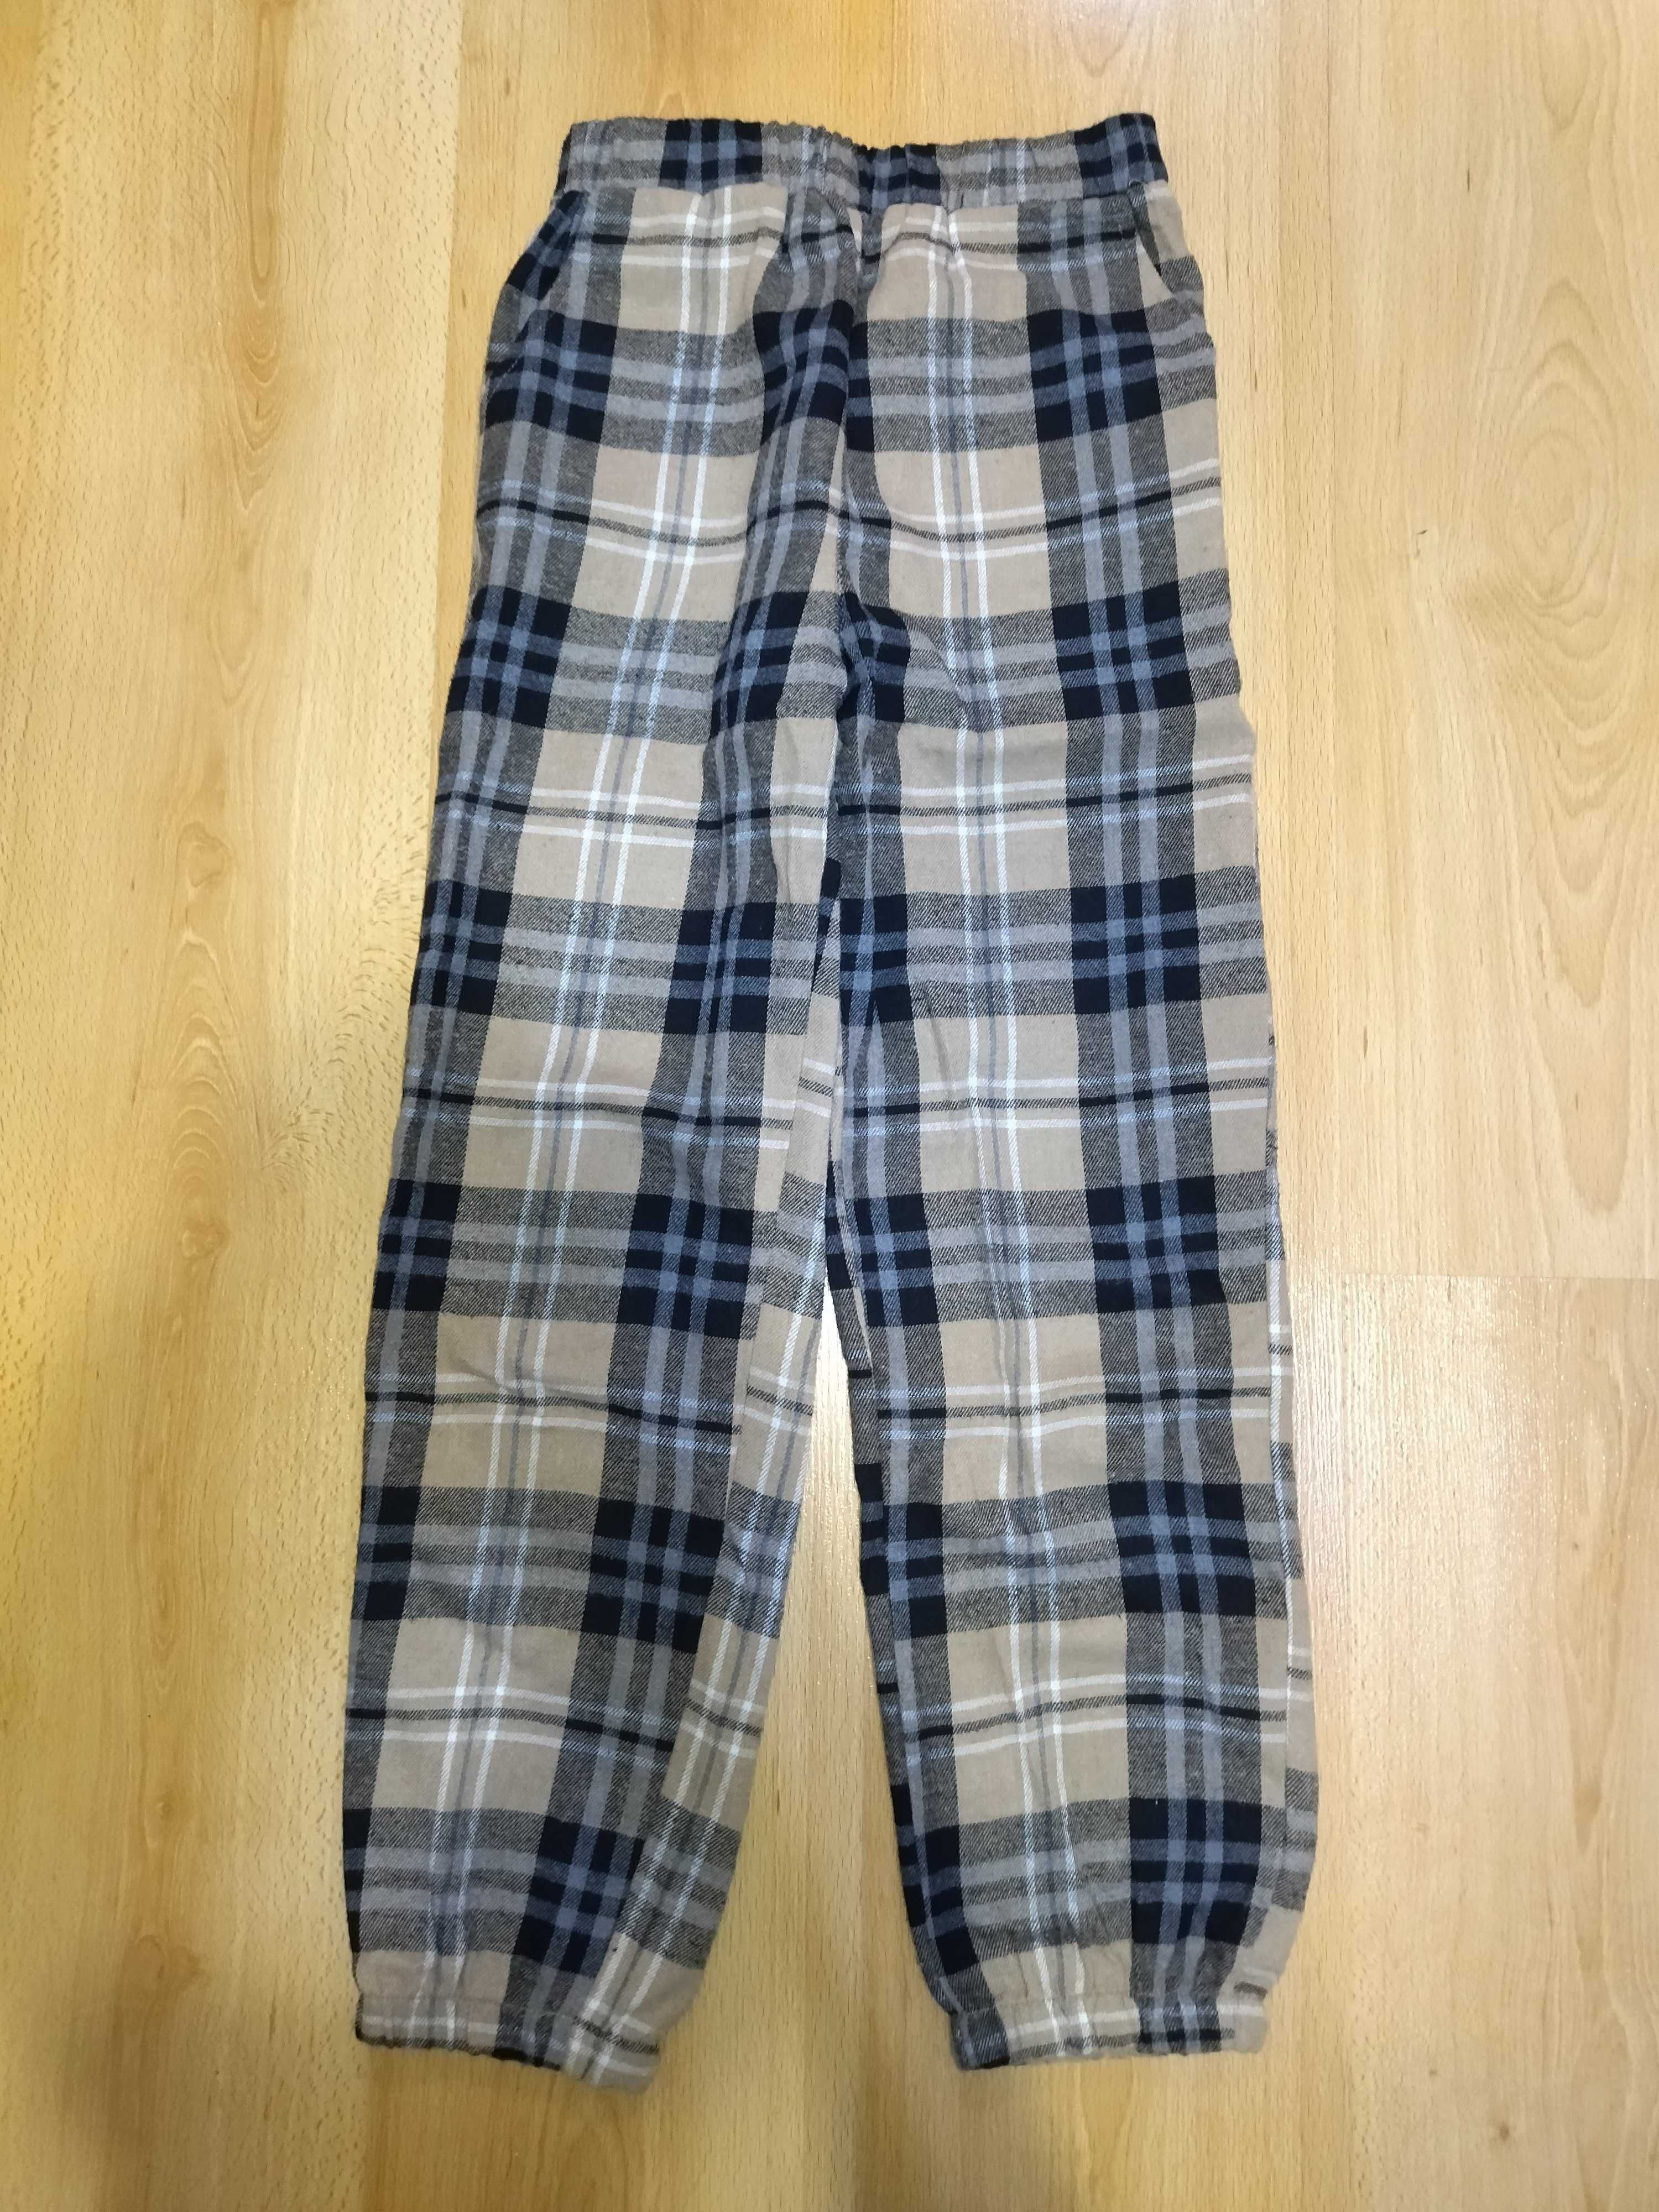 Зимни панталони 134 ръст и цяла плюшена пижама Еднорог